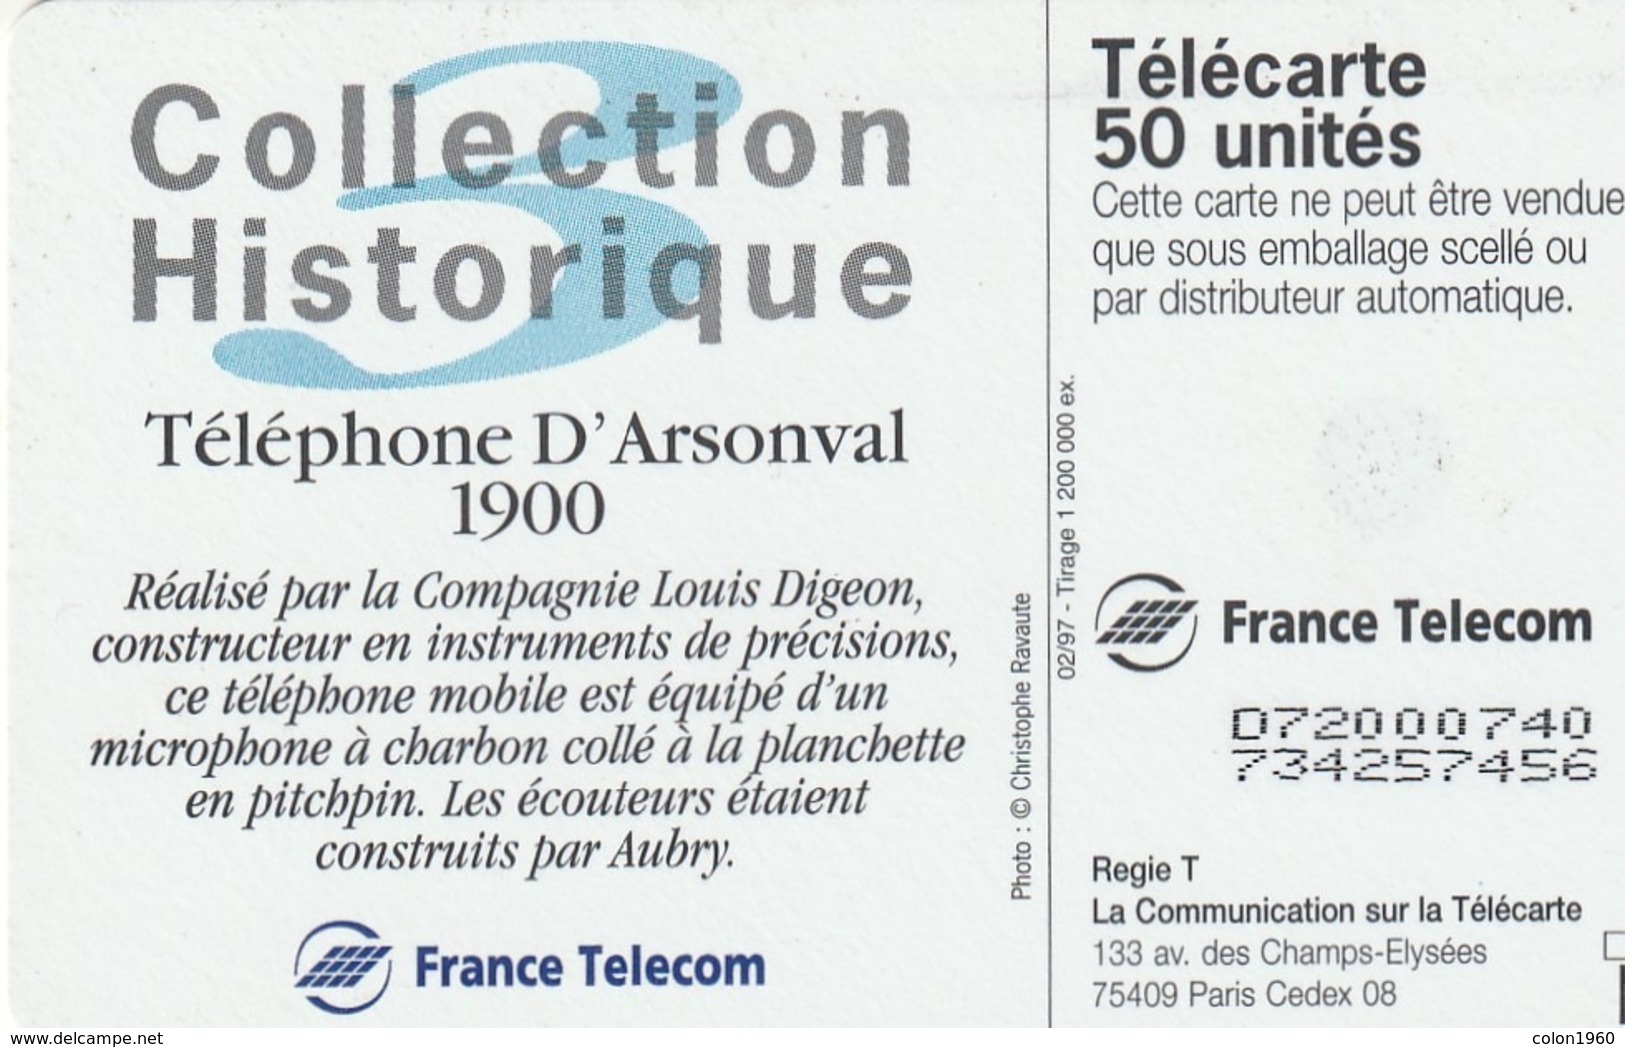 FRANCIA. Collection Historique N. 03 - Téléphone D'Arsonval 1900. 50U. 02/97. 0716.1. (257). - 1997